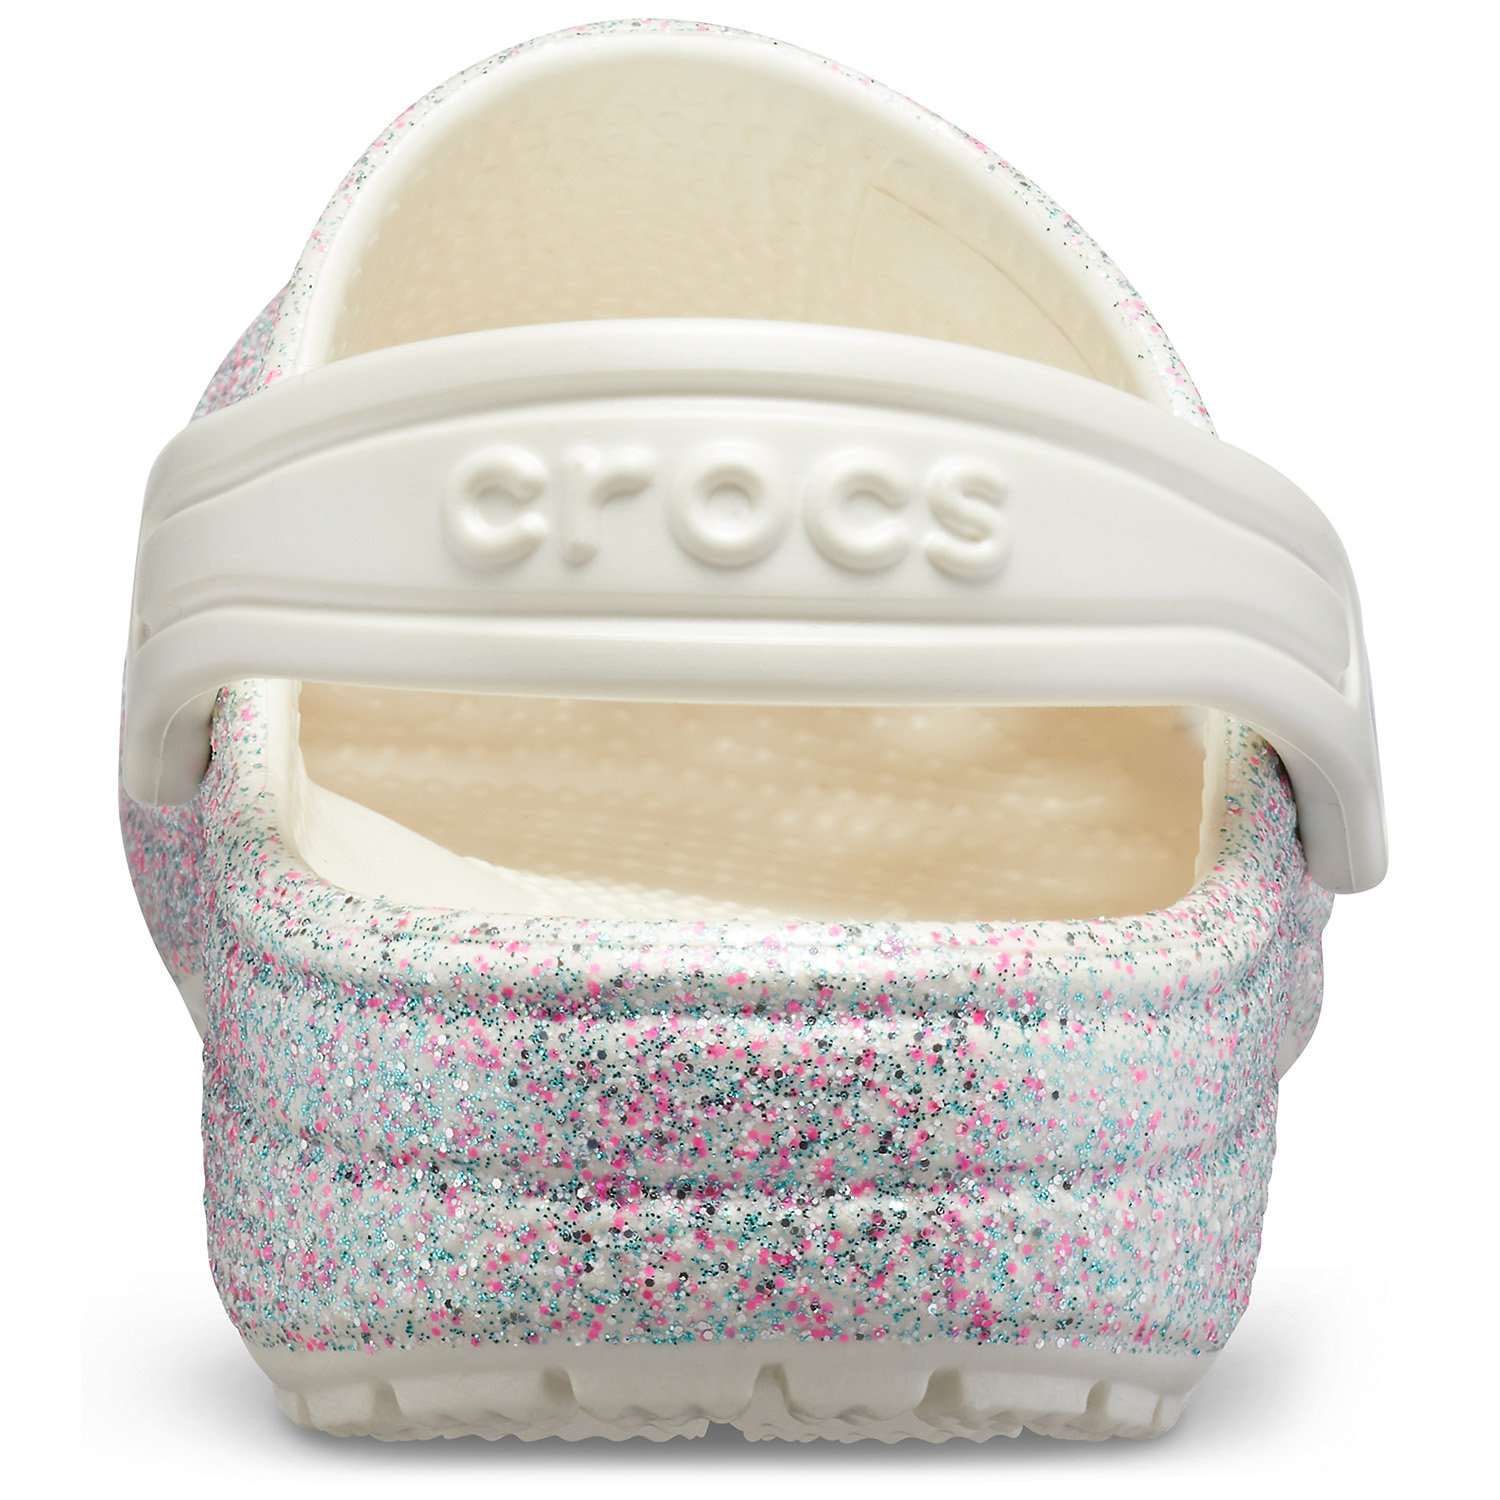 Crocs Classic Glitter Clog K Kinder Clog Roomy Fit 205441-159 rosa glitzer